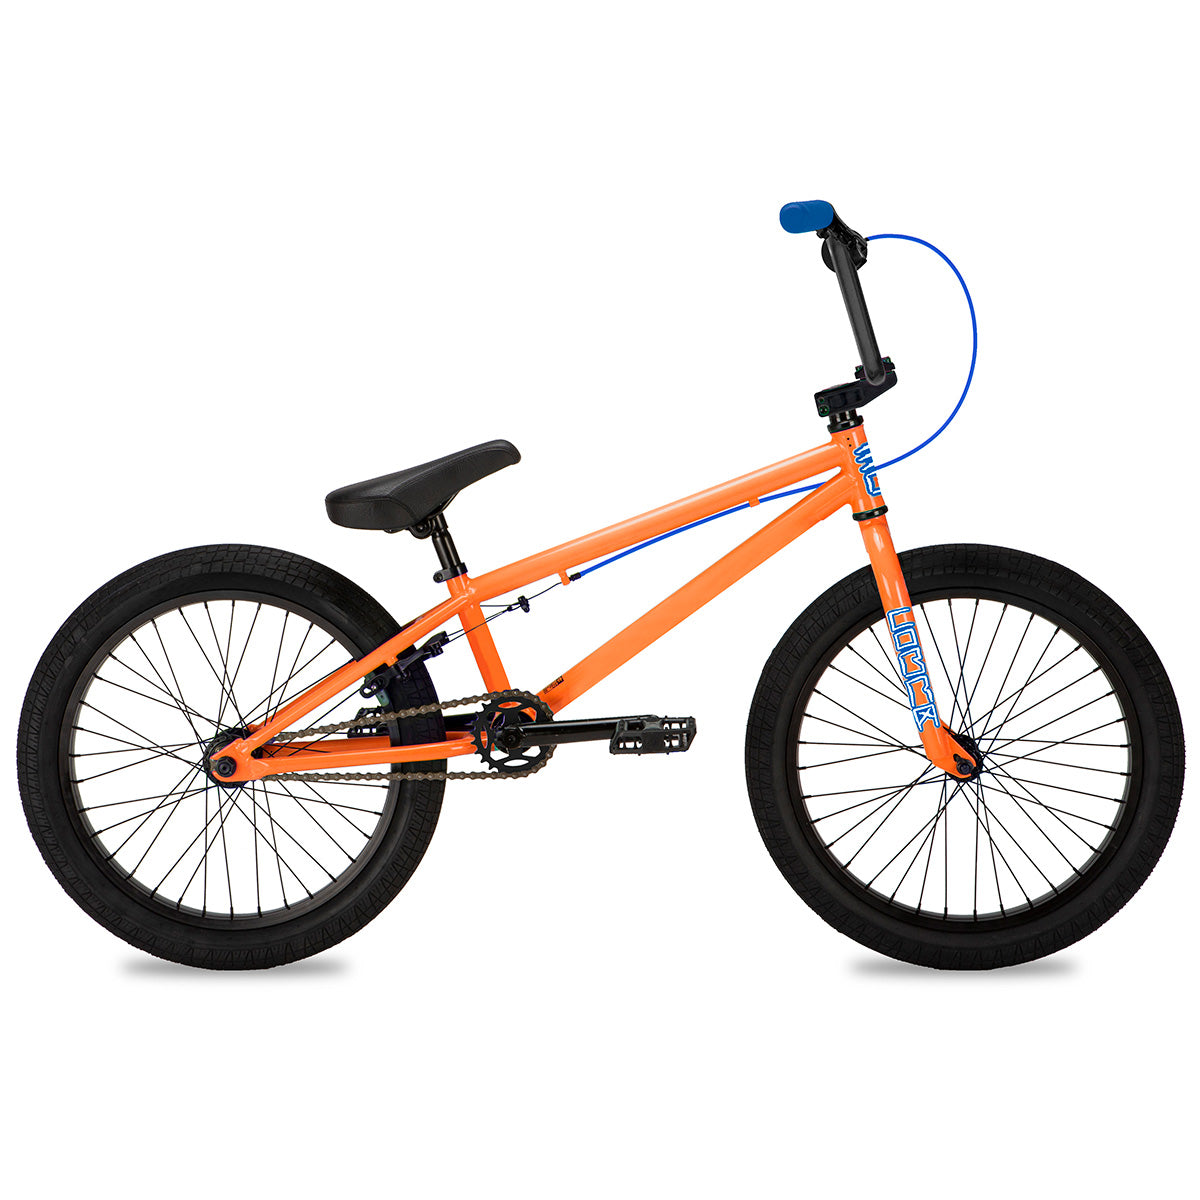 All-Rounder Freestyle BMX Bike Orange